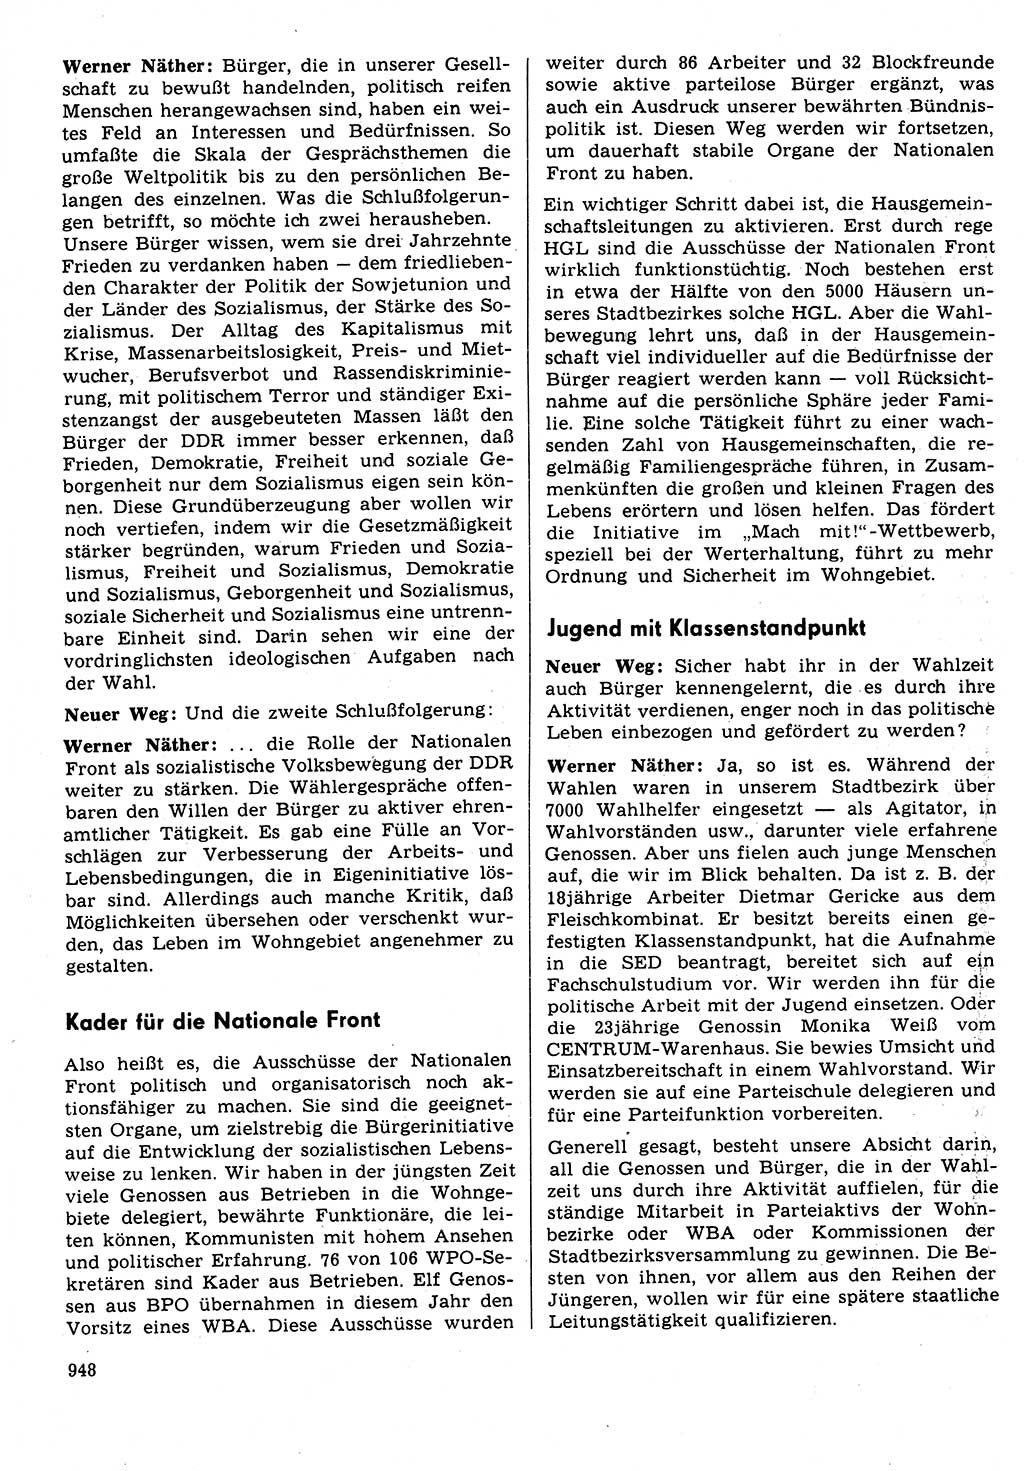 Neuer Weg (NW), Organ des Zentralkomitees (ZK) der SED (Sozialistische Einheitspartei Deutschlands) für Fragen des Parteilebens, 31. Jahrgang [Deutsche Demokratische Republik (DDR)] 1976, Seite 948 (NW ZK SED DDR 1976, S. 948)